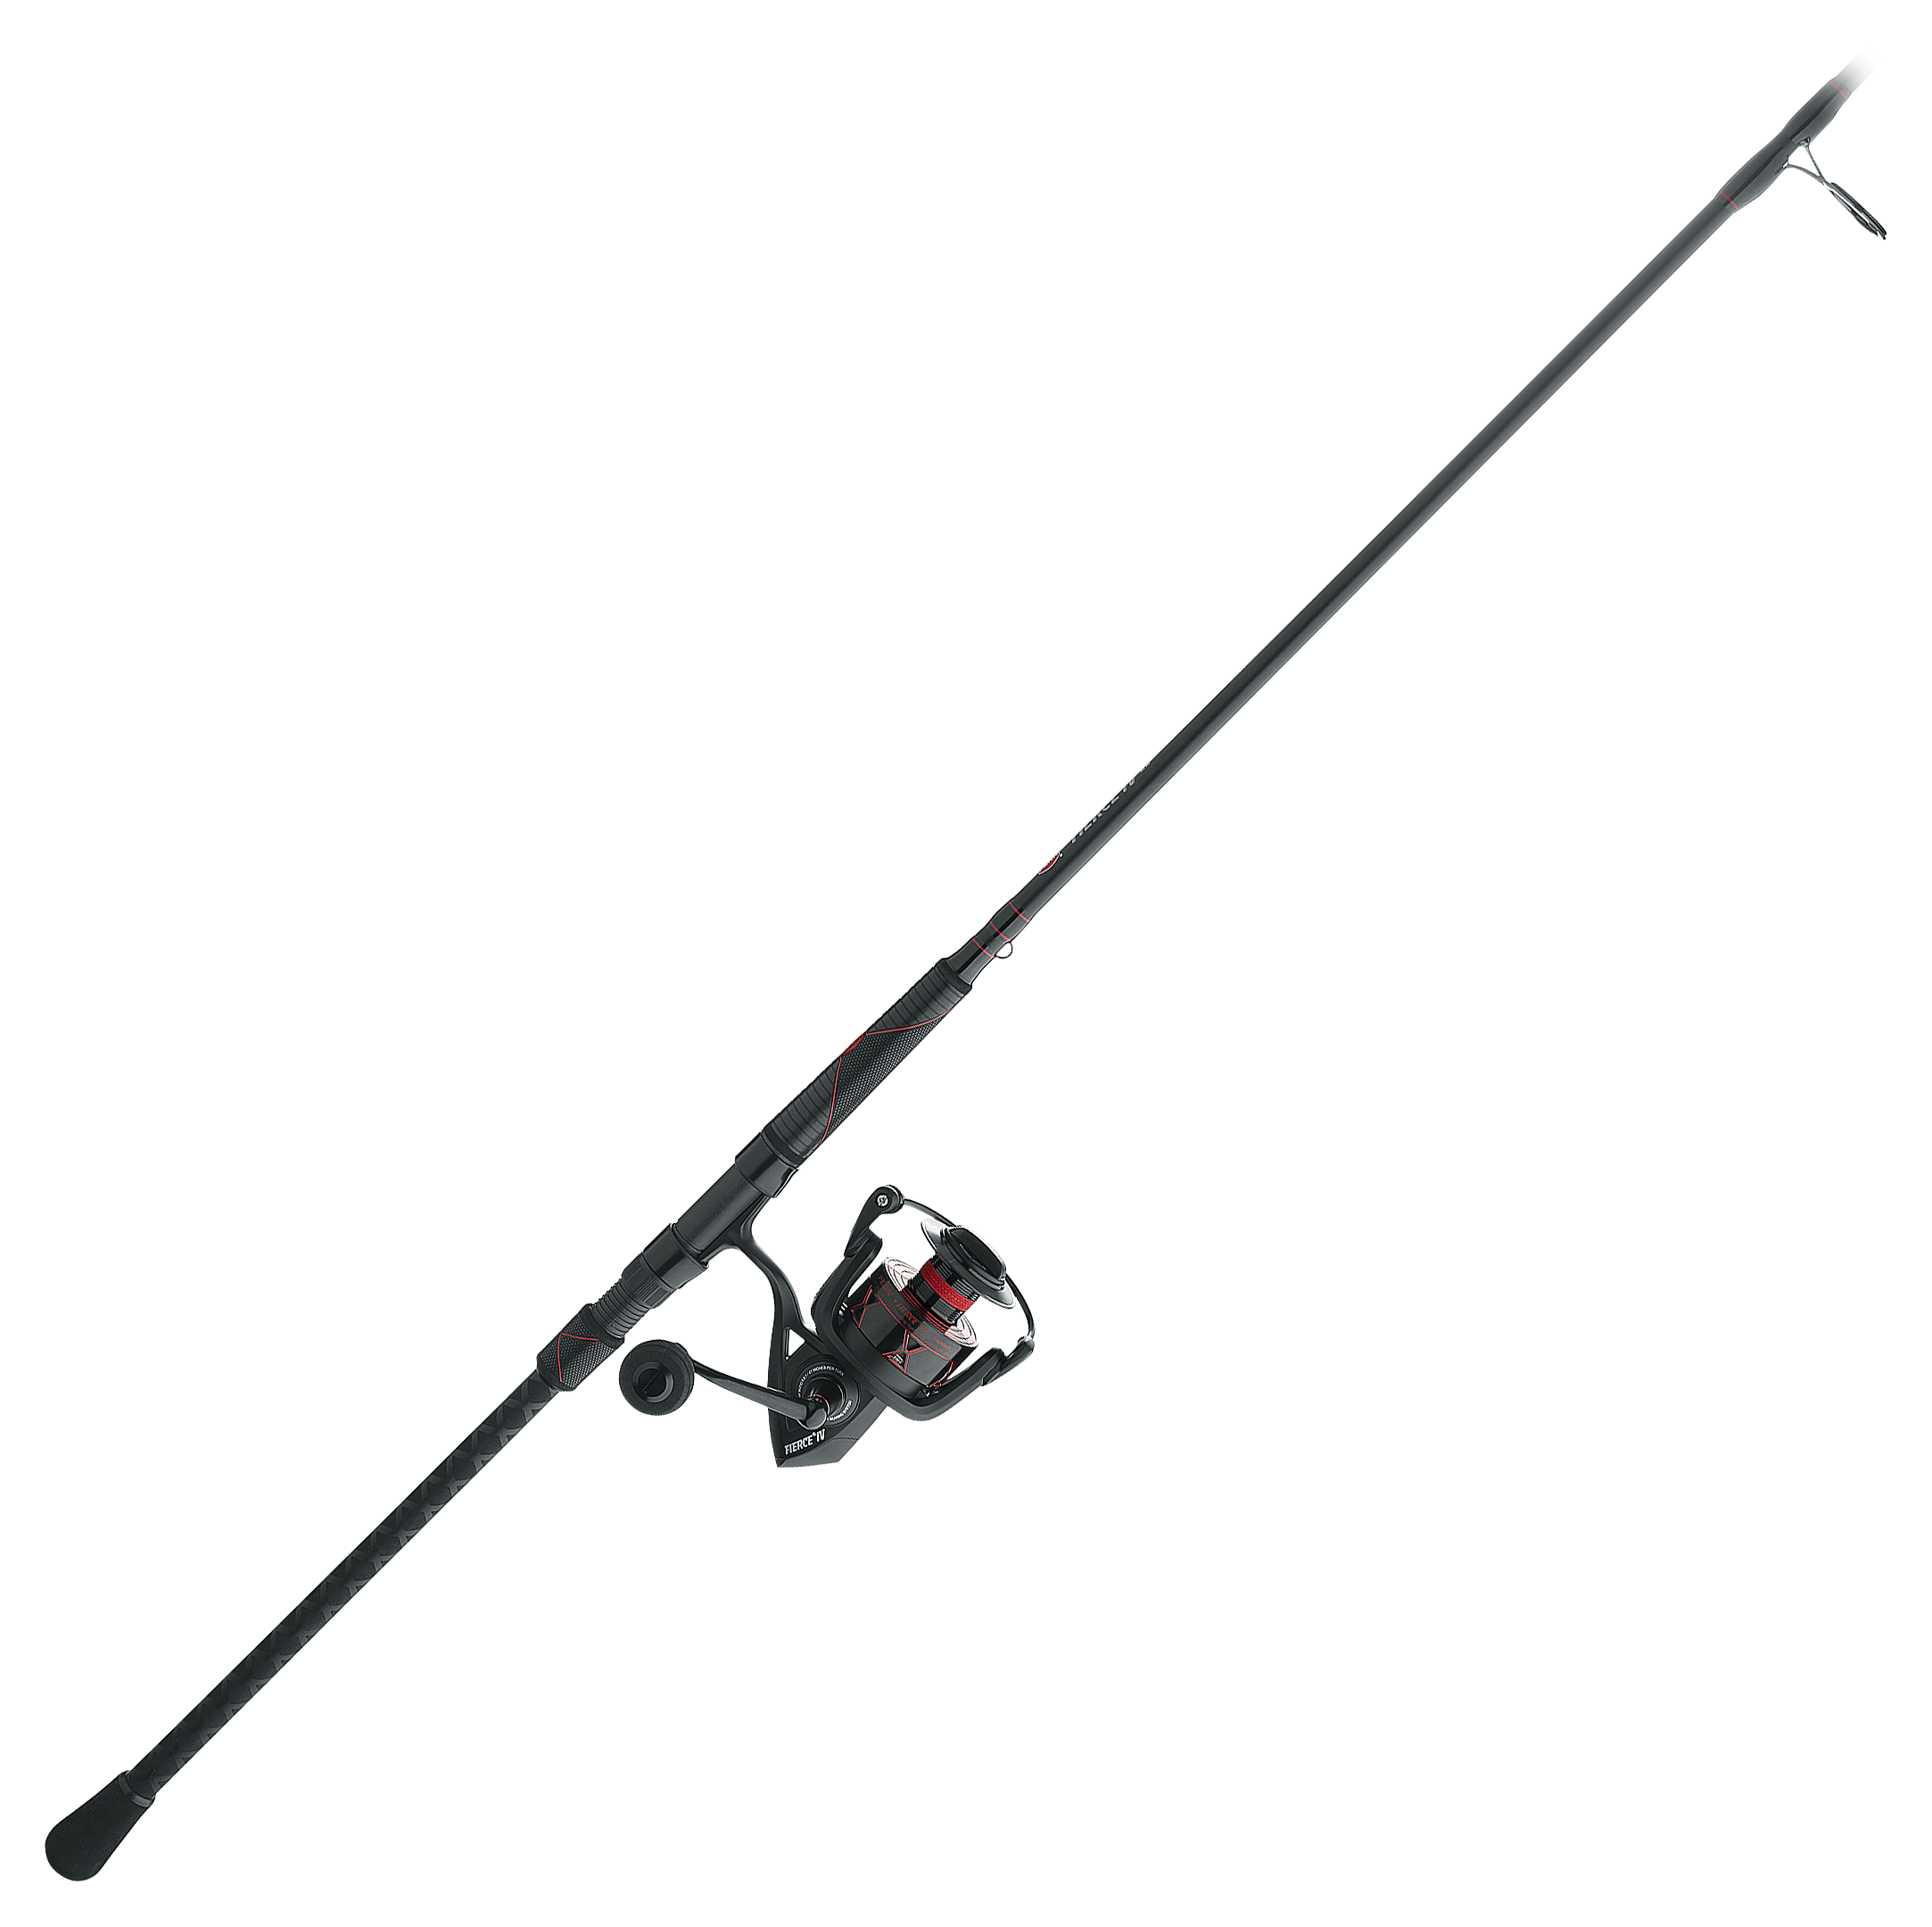 Penn Fishing Fierce IV 5000 7' Med/Heavy Spinning Rod & Reel Combo Brand  New